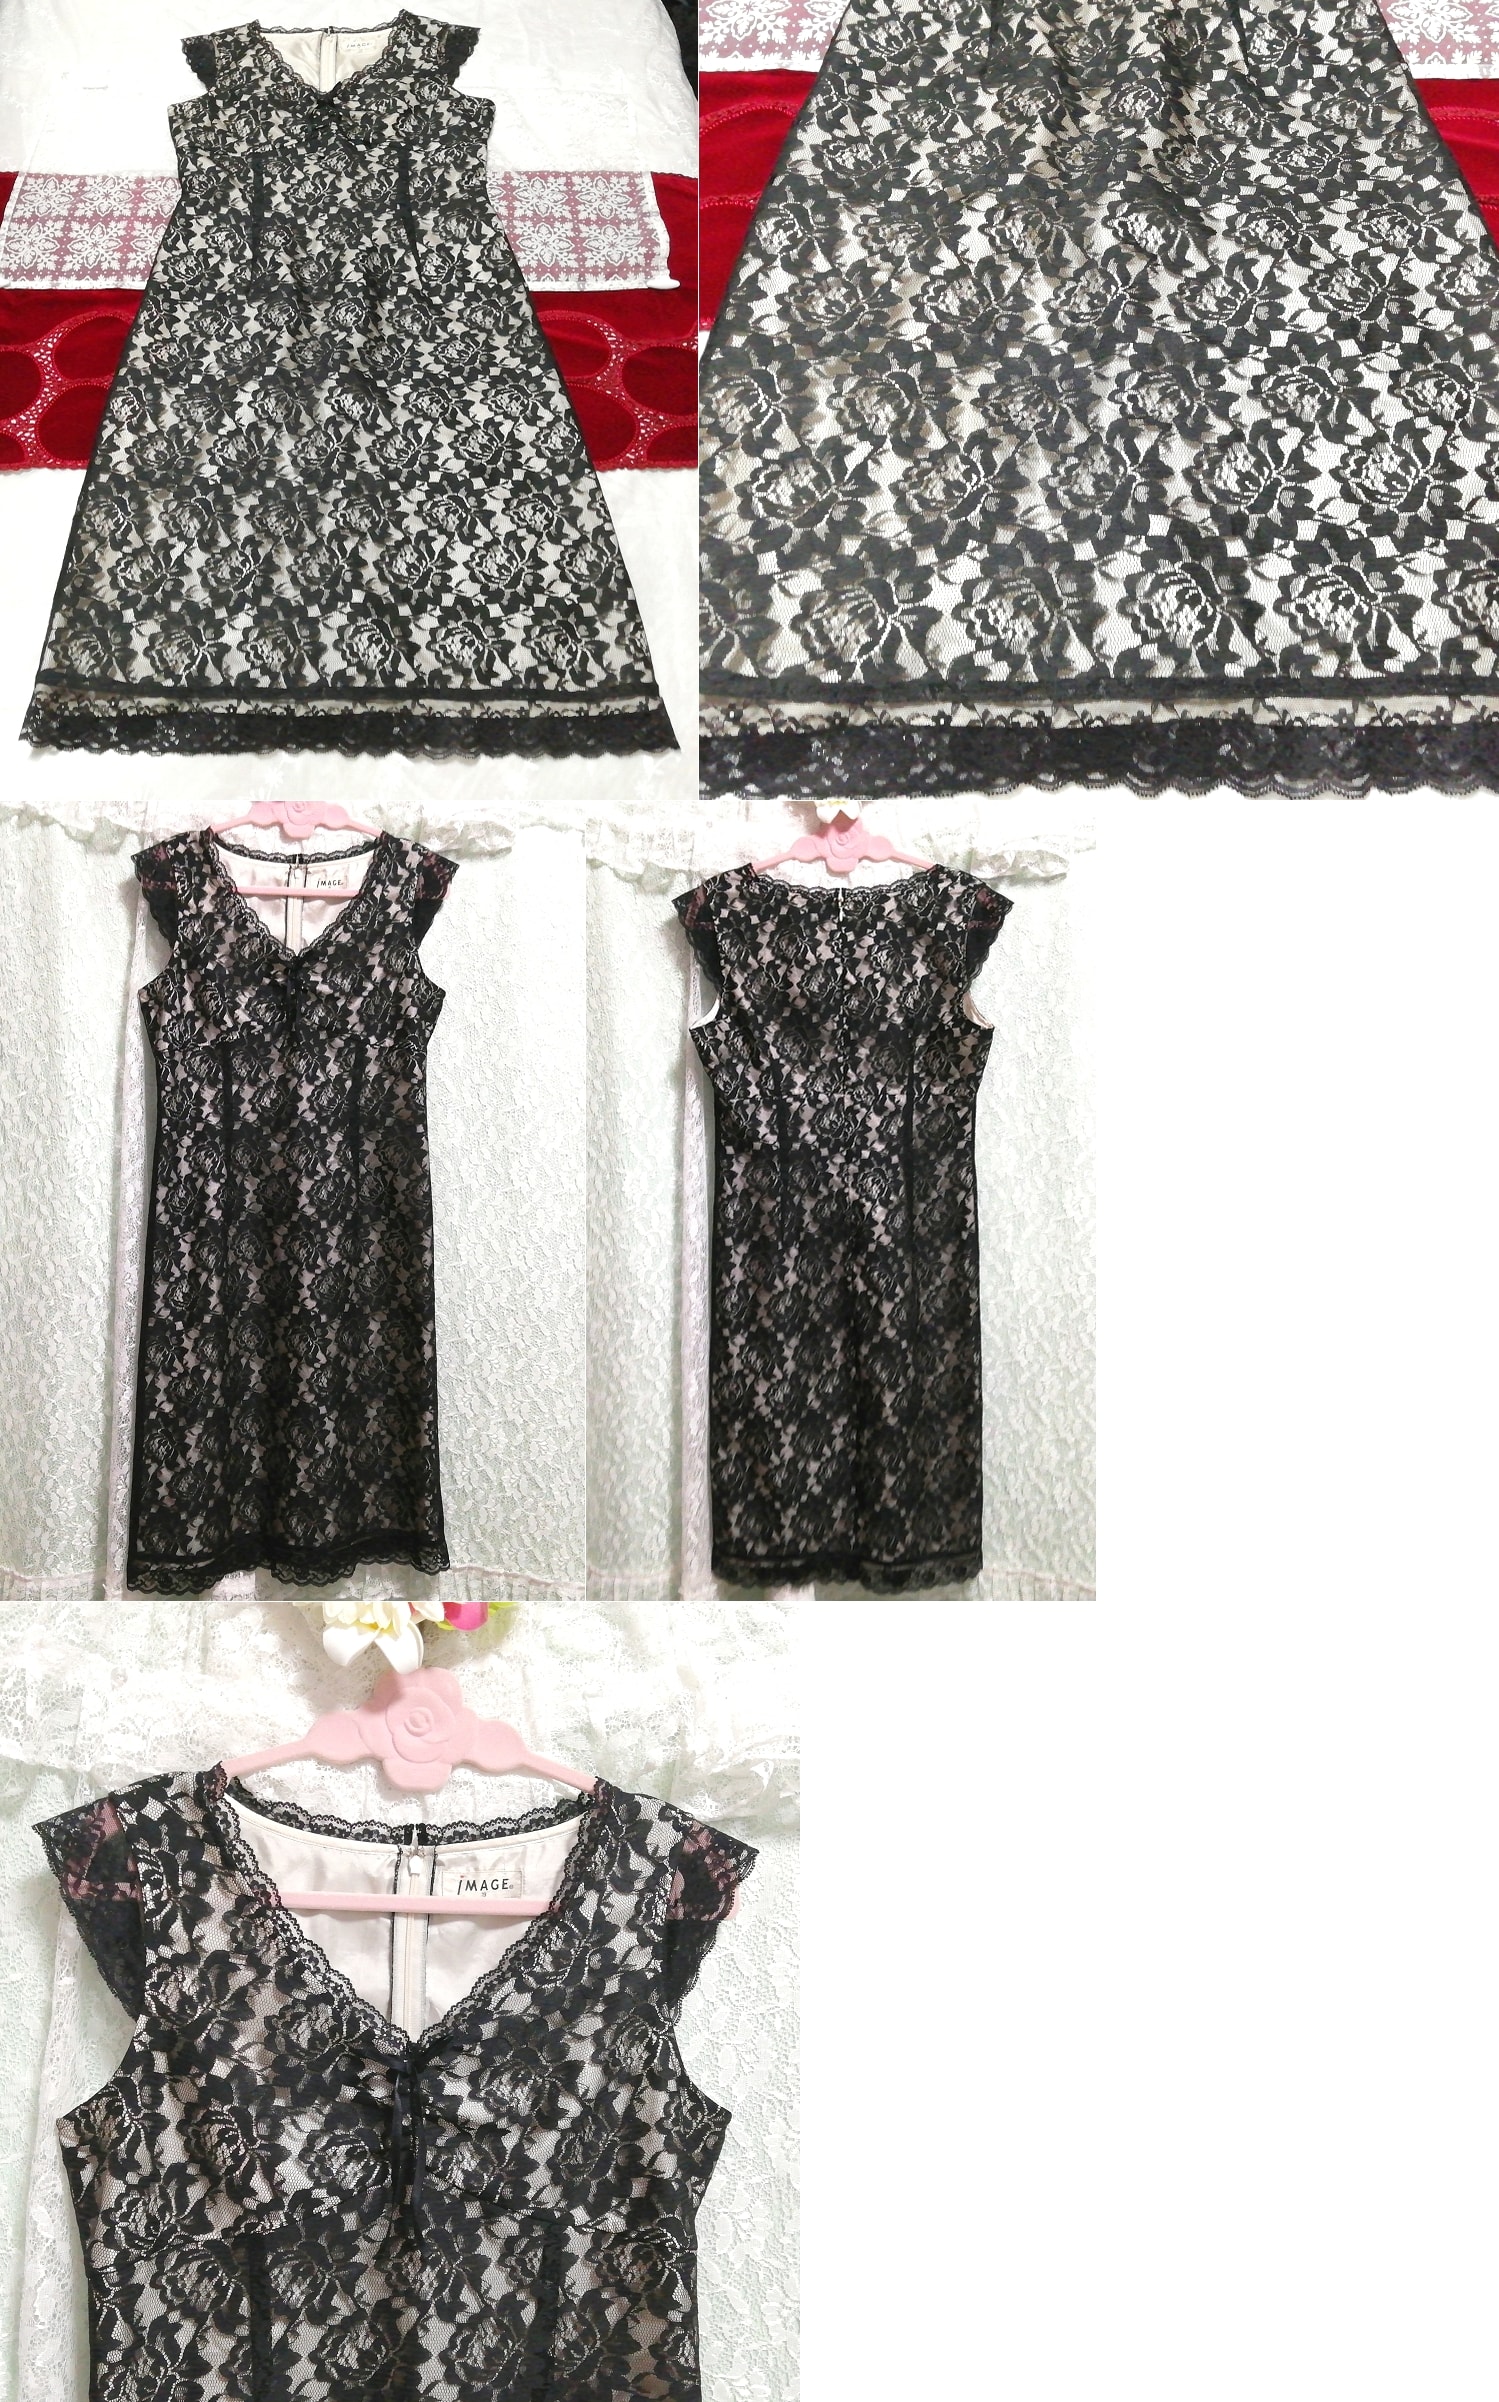 黒薔薇レースネグリジェノースリーブワンピースドレス Black rose lace negligee nosleeve dress, ワンピース, ひざ丈スカート, Mサイズ